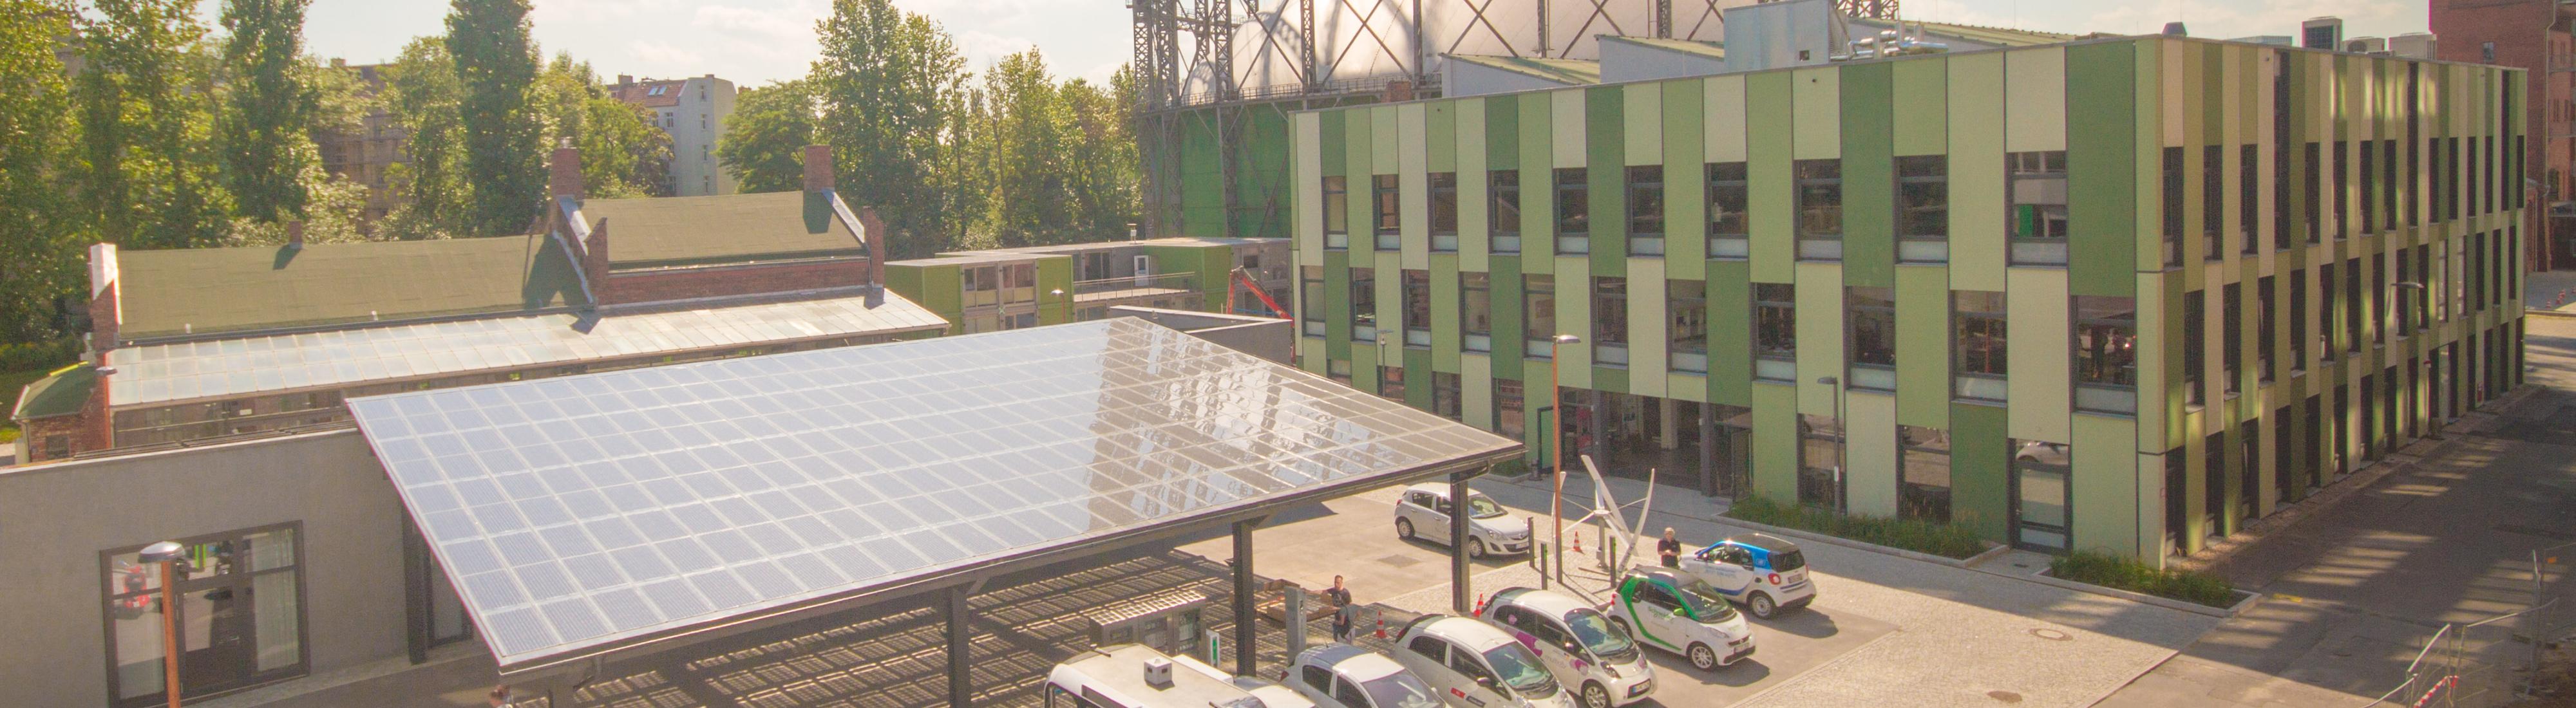 Neben dem alten Gasometer auf dem EUREF-Campus steht eine Überdachung für Elektrofahrzeuge, auf der Solarpanele angebracht sind.